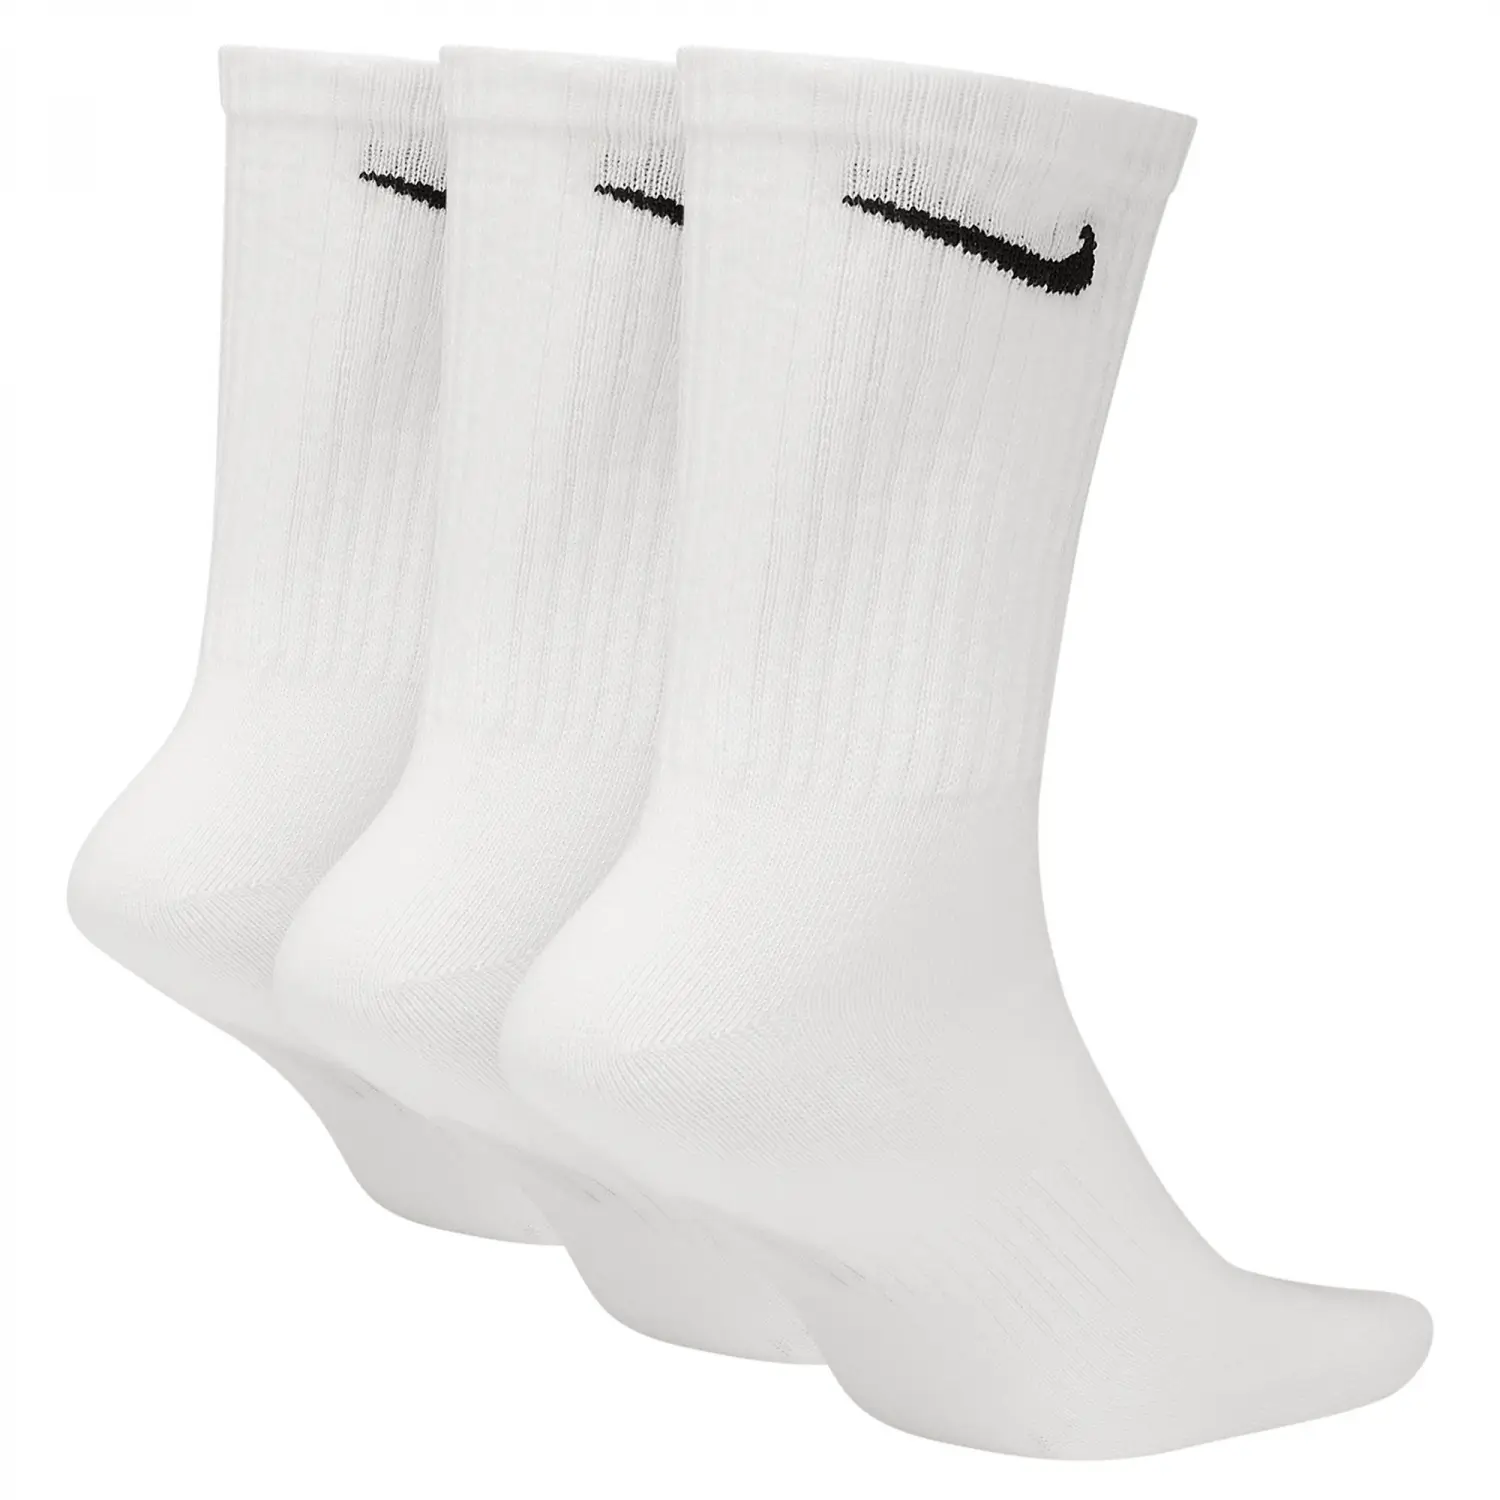 NIKE Everyday Lightweight Beyaz Erkek Çorap - SX7676-100